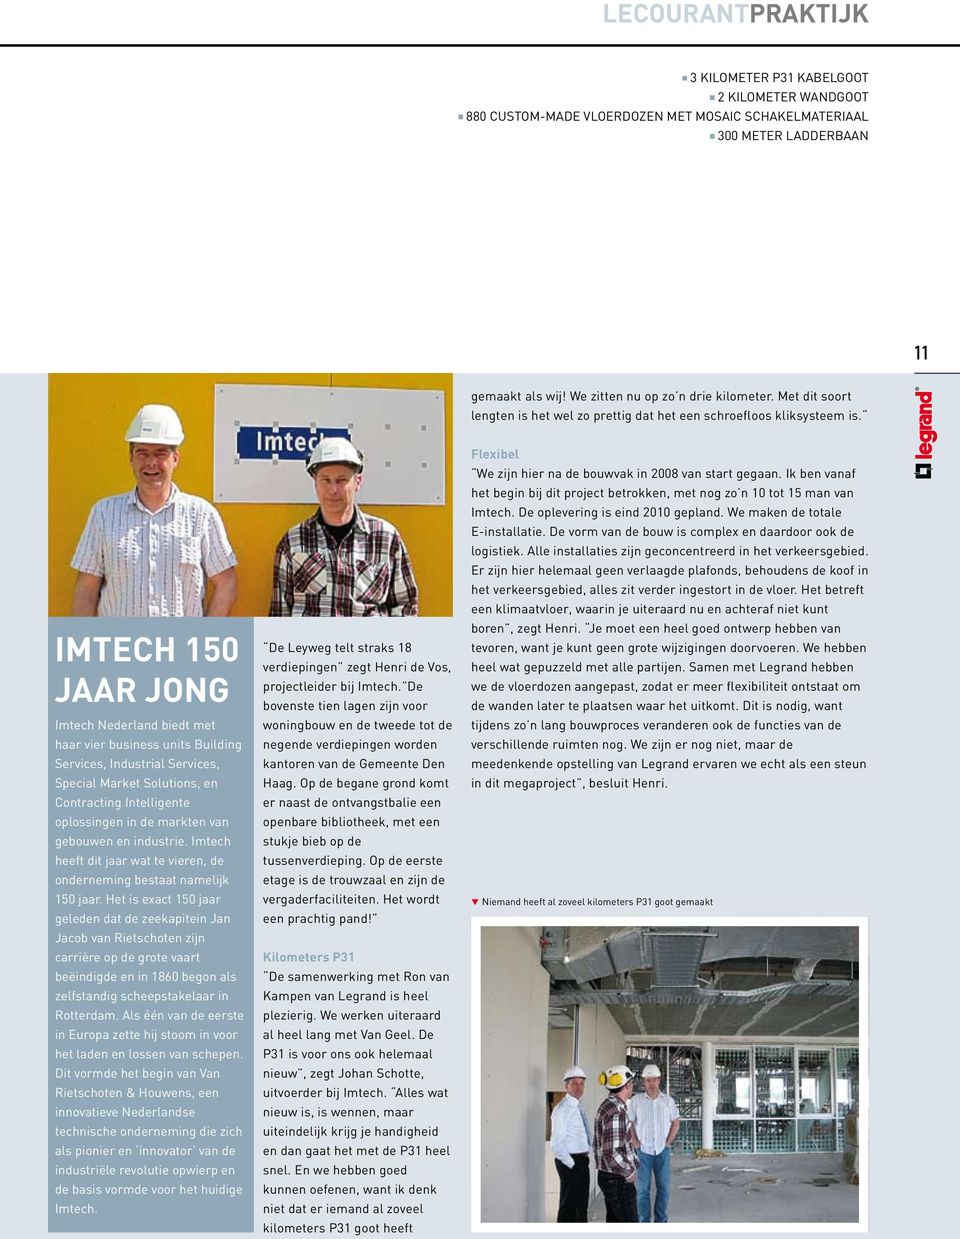 Imtech 150 jaar jong Imtech Nederland biedt met haar vier business units Building Services, Industrial Services, Special Market Solutions, en Contracting Intelligente oplossingen in de markten van